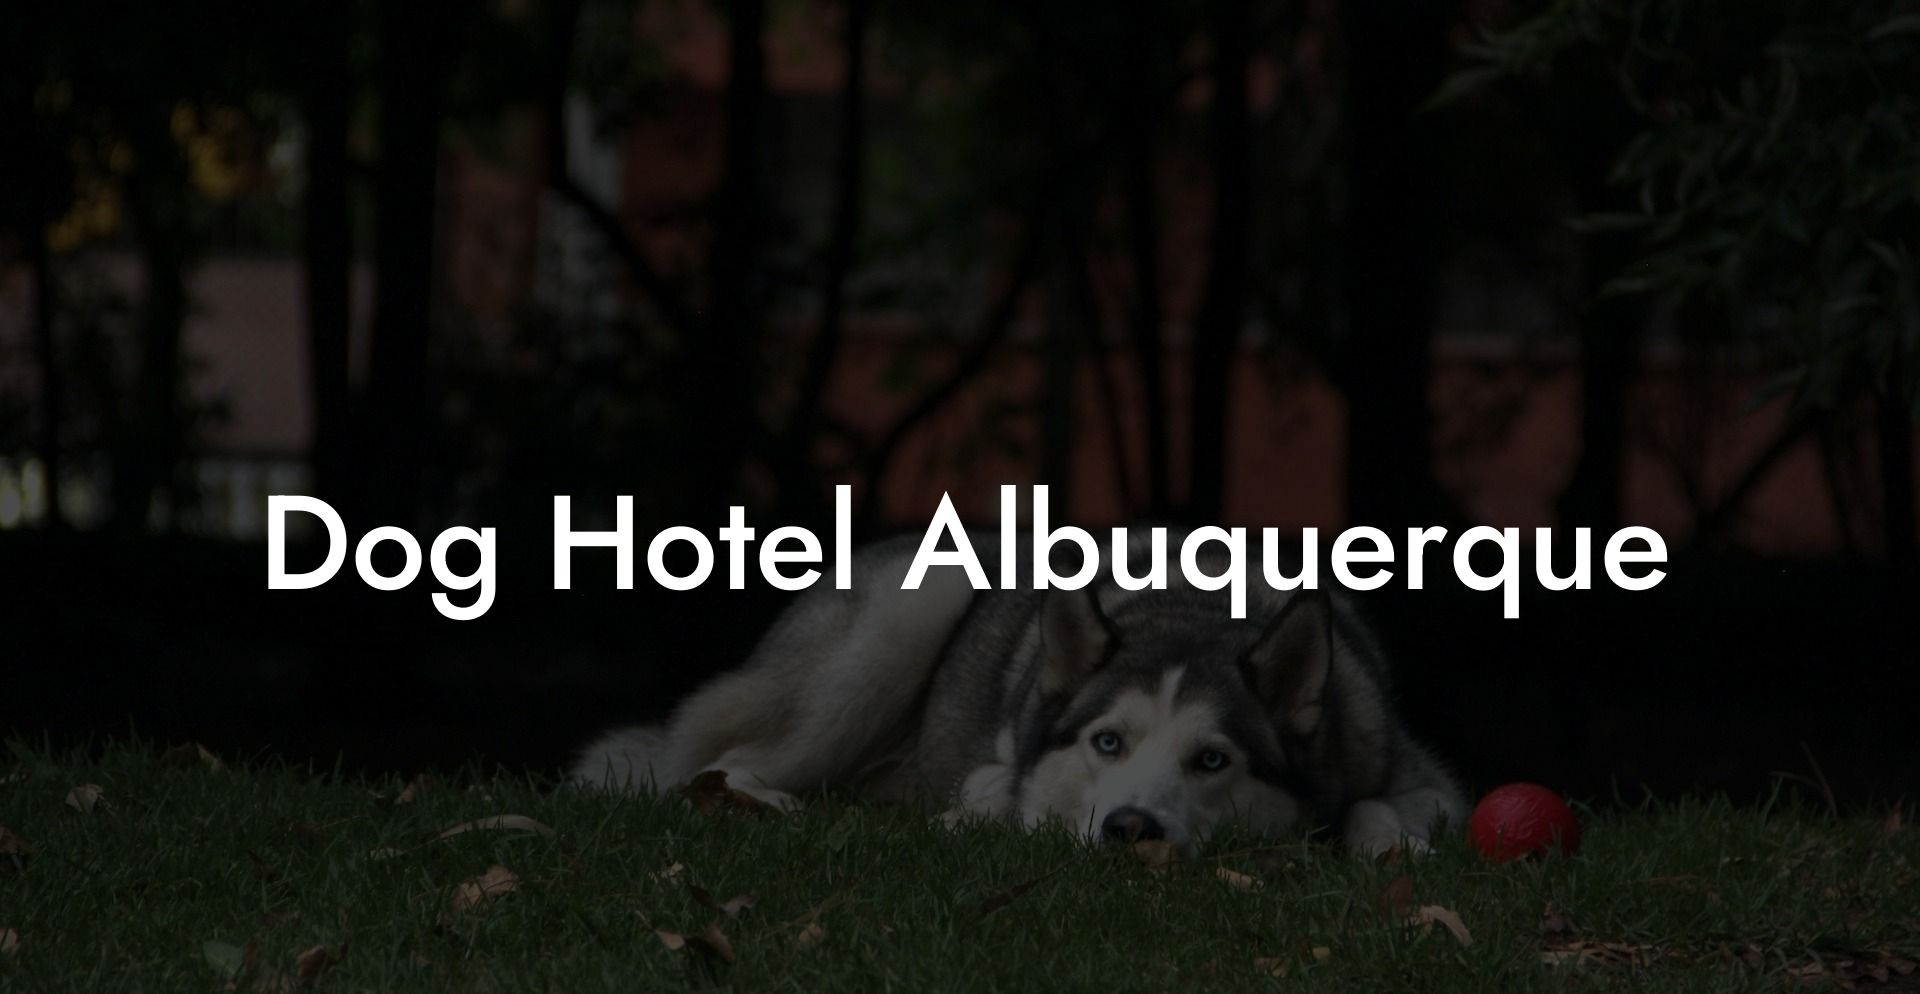 Dog Hotel Albuquerque